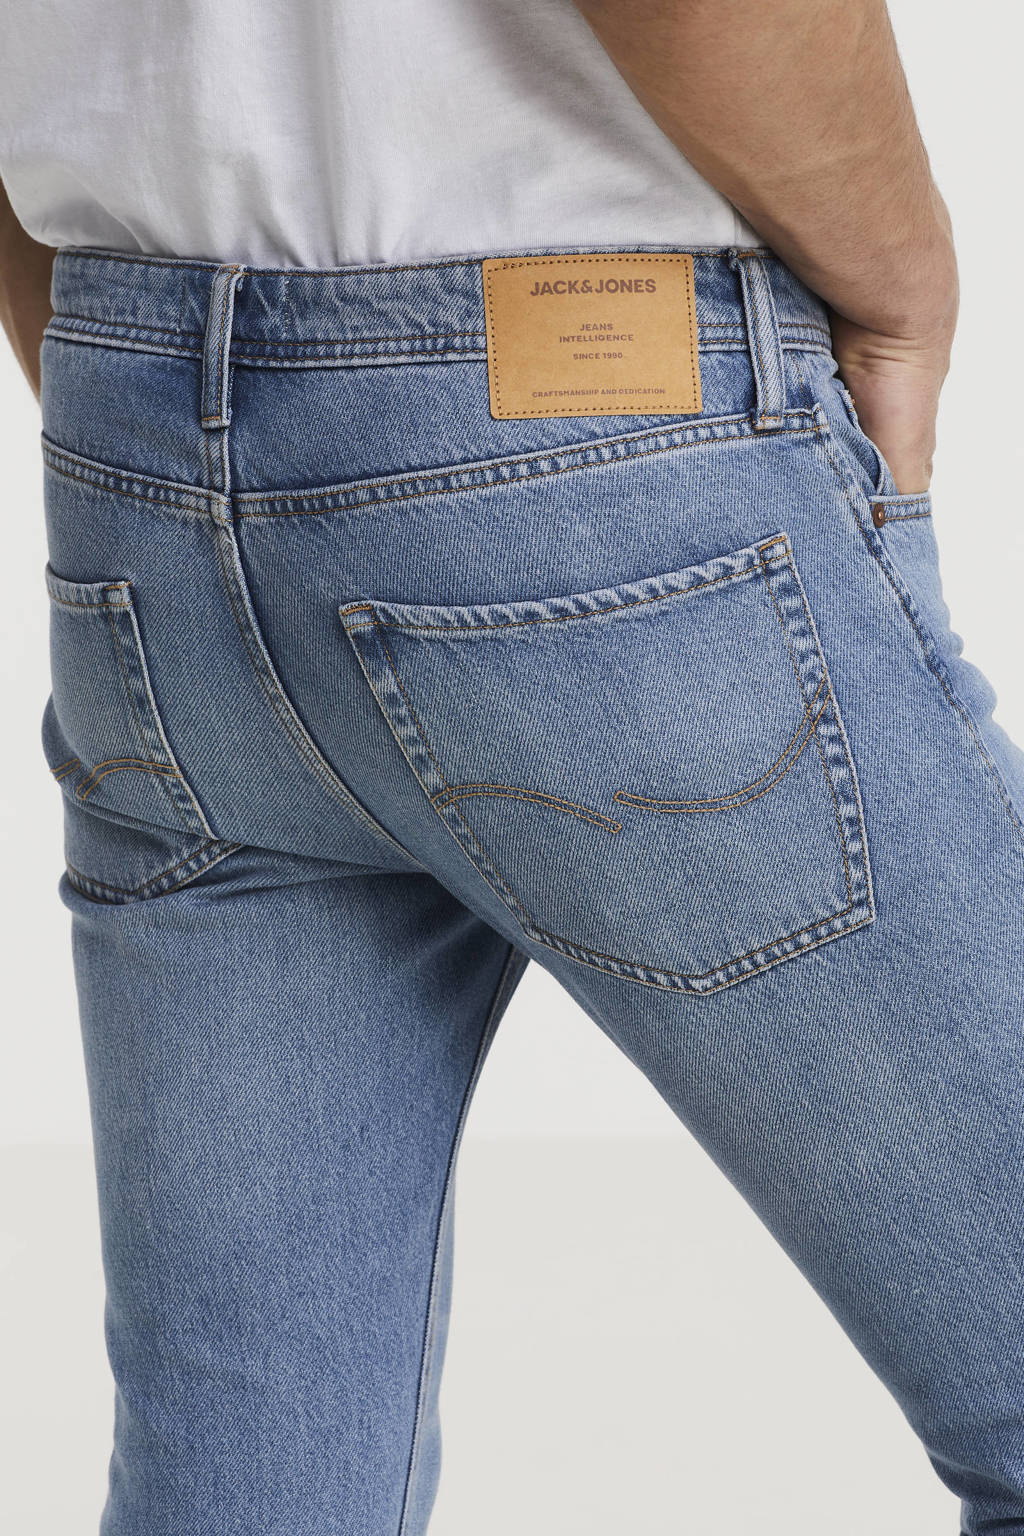 Openlijk behalve voor spanning JACK & JONES JEANS INTELLIGENCE regular fit jeans JJIMIKE JJORIGINAL blue  denim | wehkamp